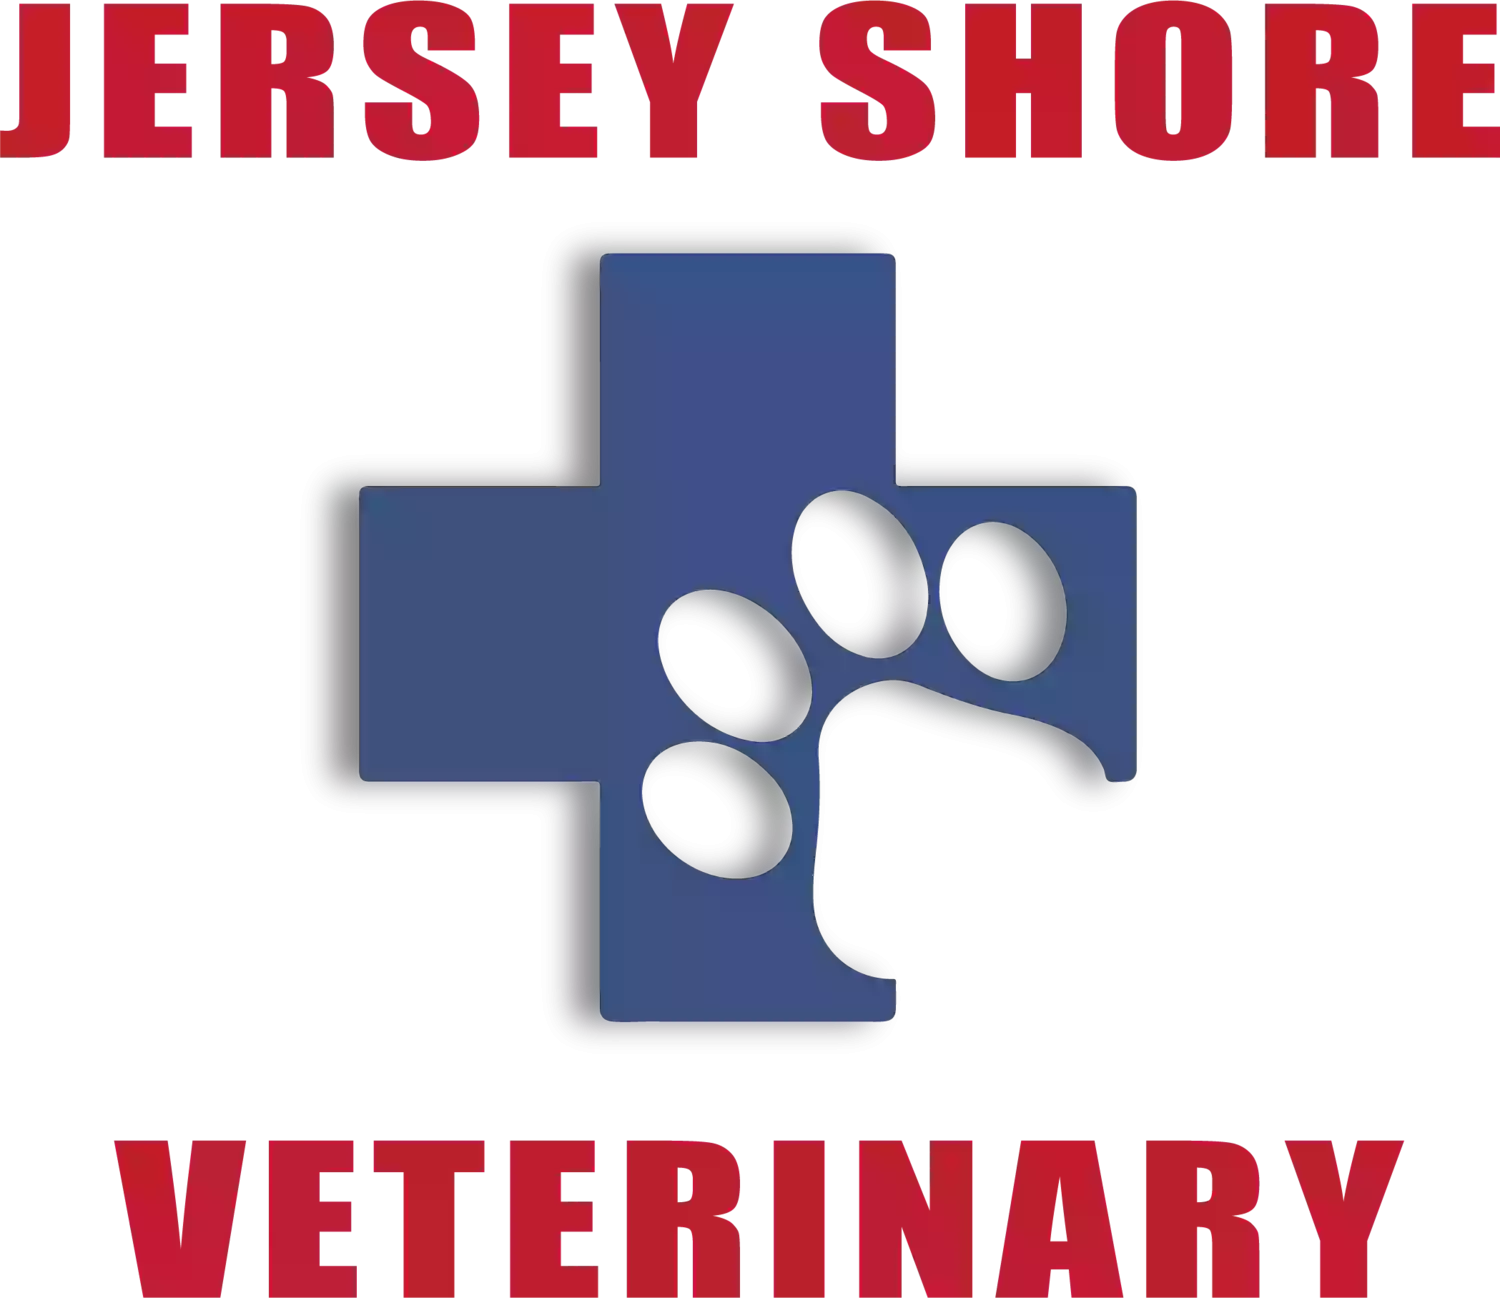 Jersey Shore Veterinary Hospital